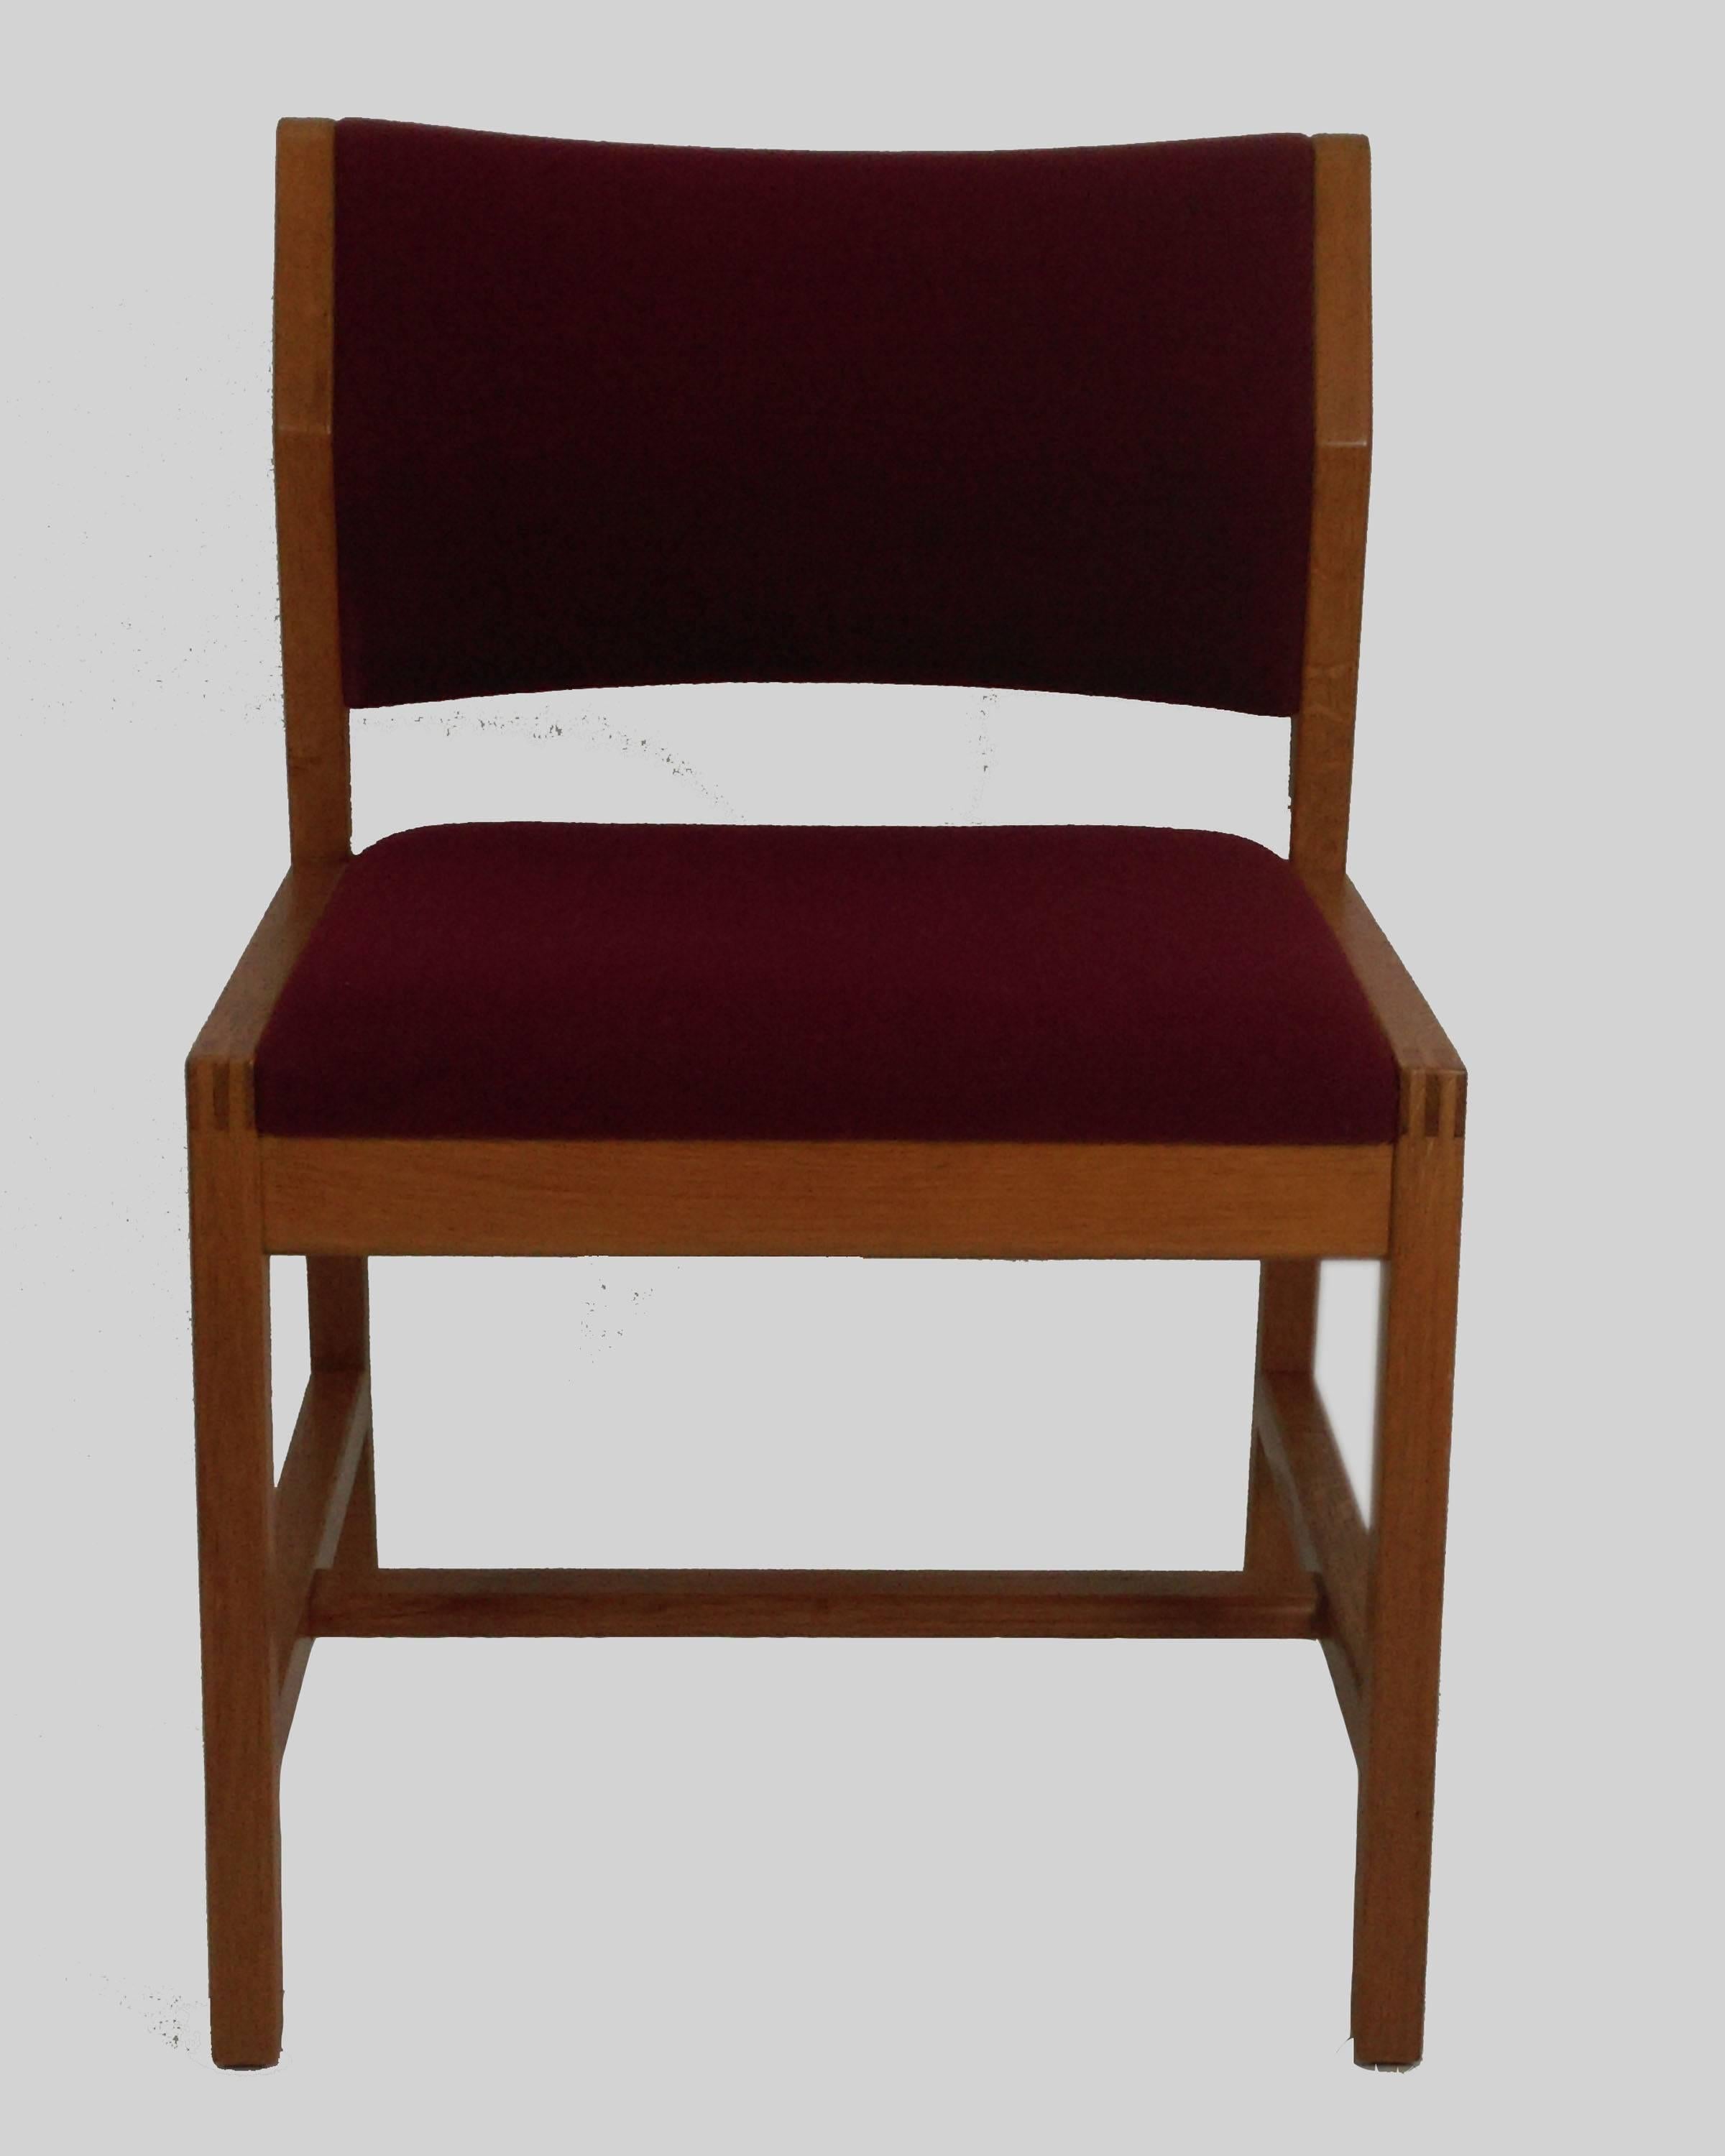 Satz von sechs Esszimmerstühlen Modell 3241 aus Eiche, entworfen 1968 von Børge Mogensen für Frederecia Stolefabrik.

Die Stühle und die Polsterung sind in sehr gutem Zustand.